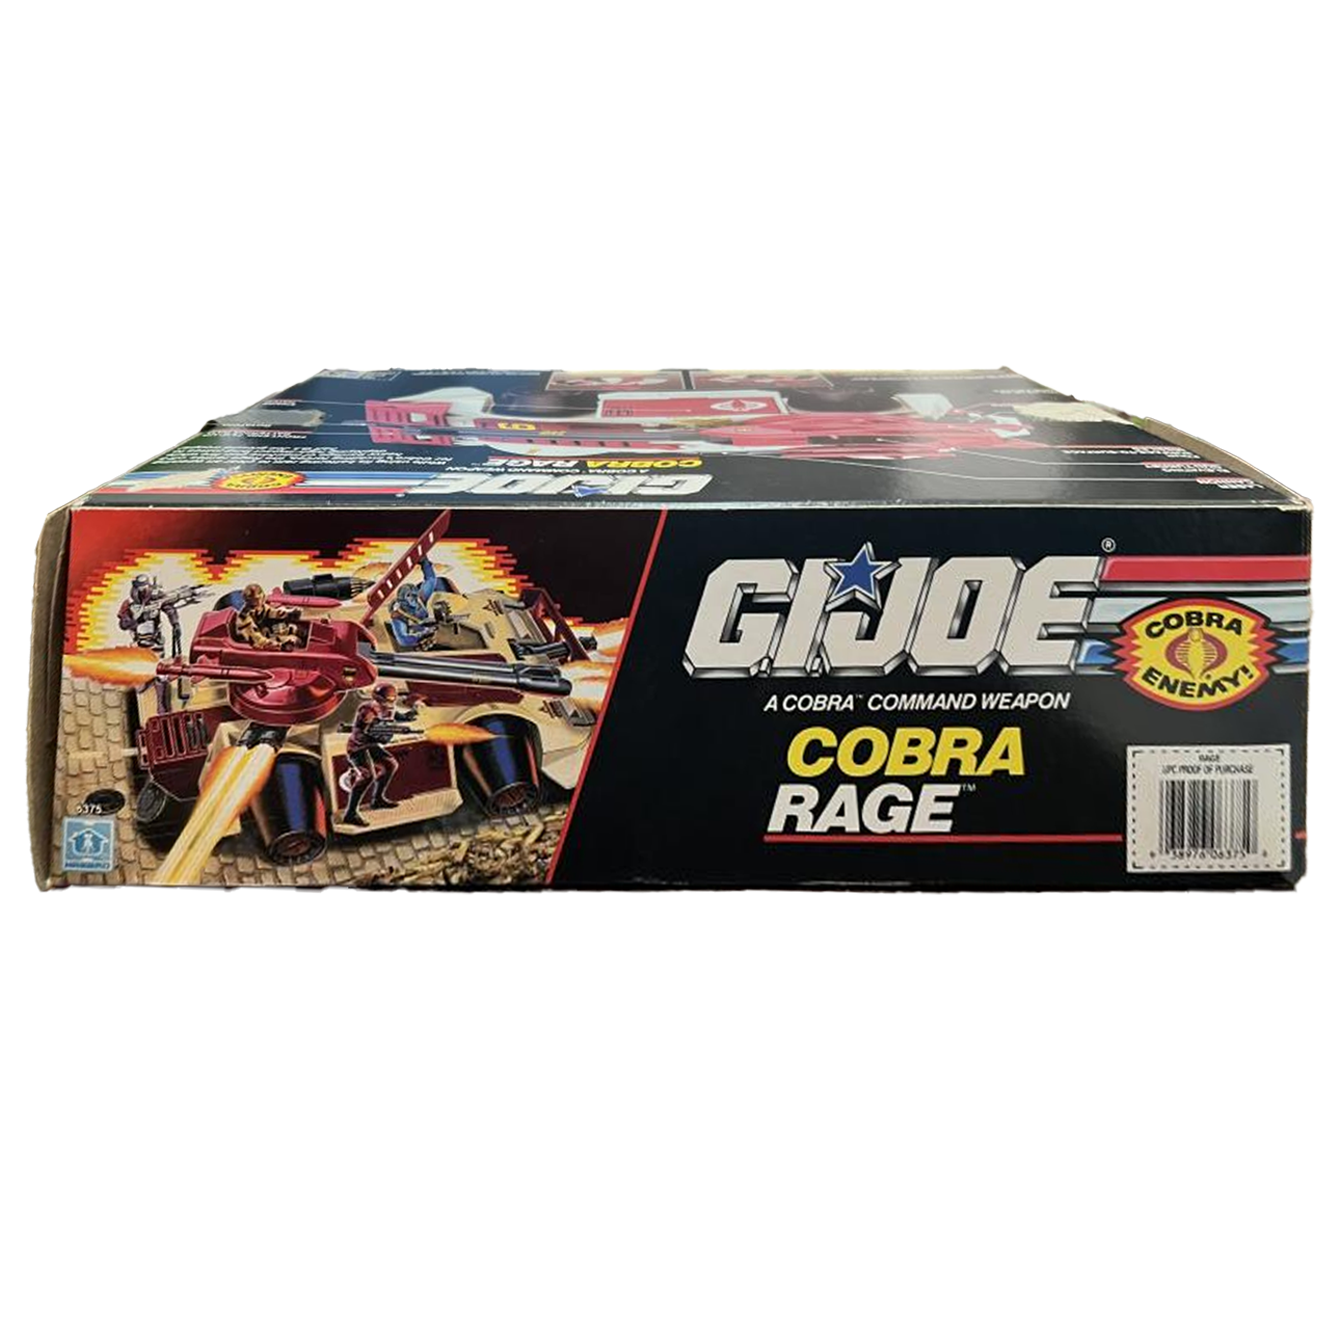 1989 GI Joe Cobra Rage